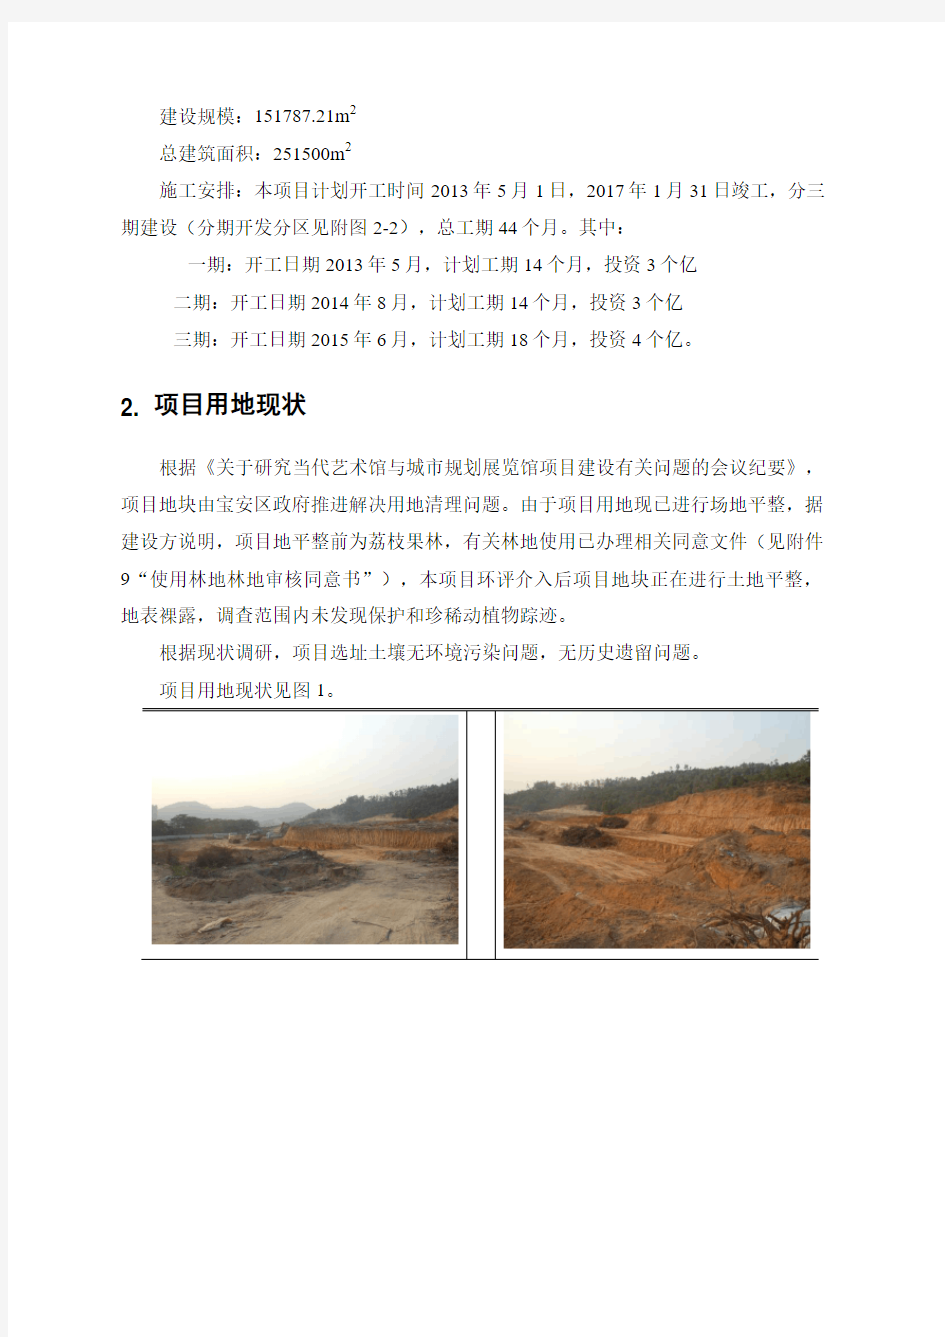 深圳中海尖岗山建设项目环境影响评价报告书